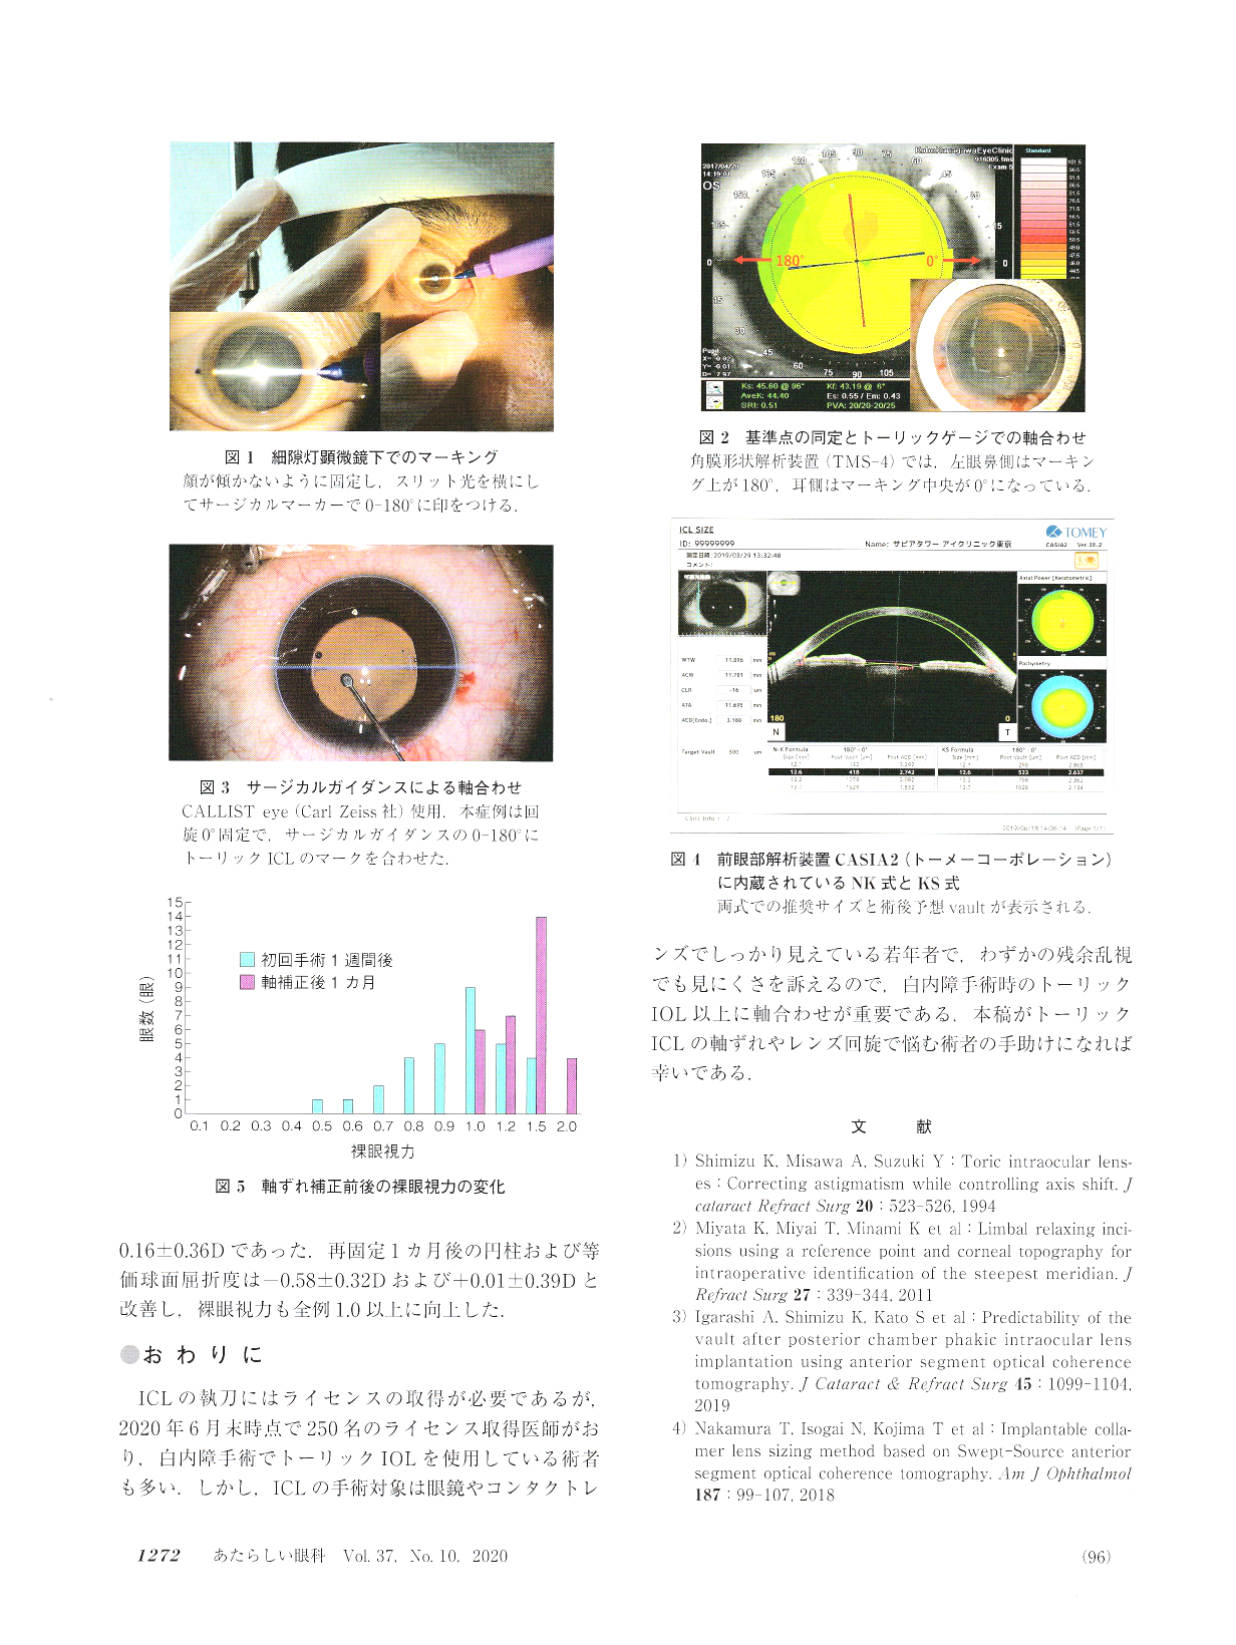 「あたらしい眼科」Vol.37,N0.10,2020に当クリニックの執刀責任者の北澤世志博の記事が掲載